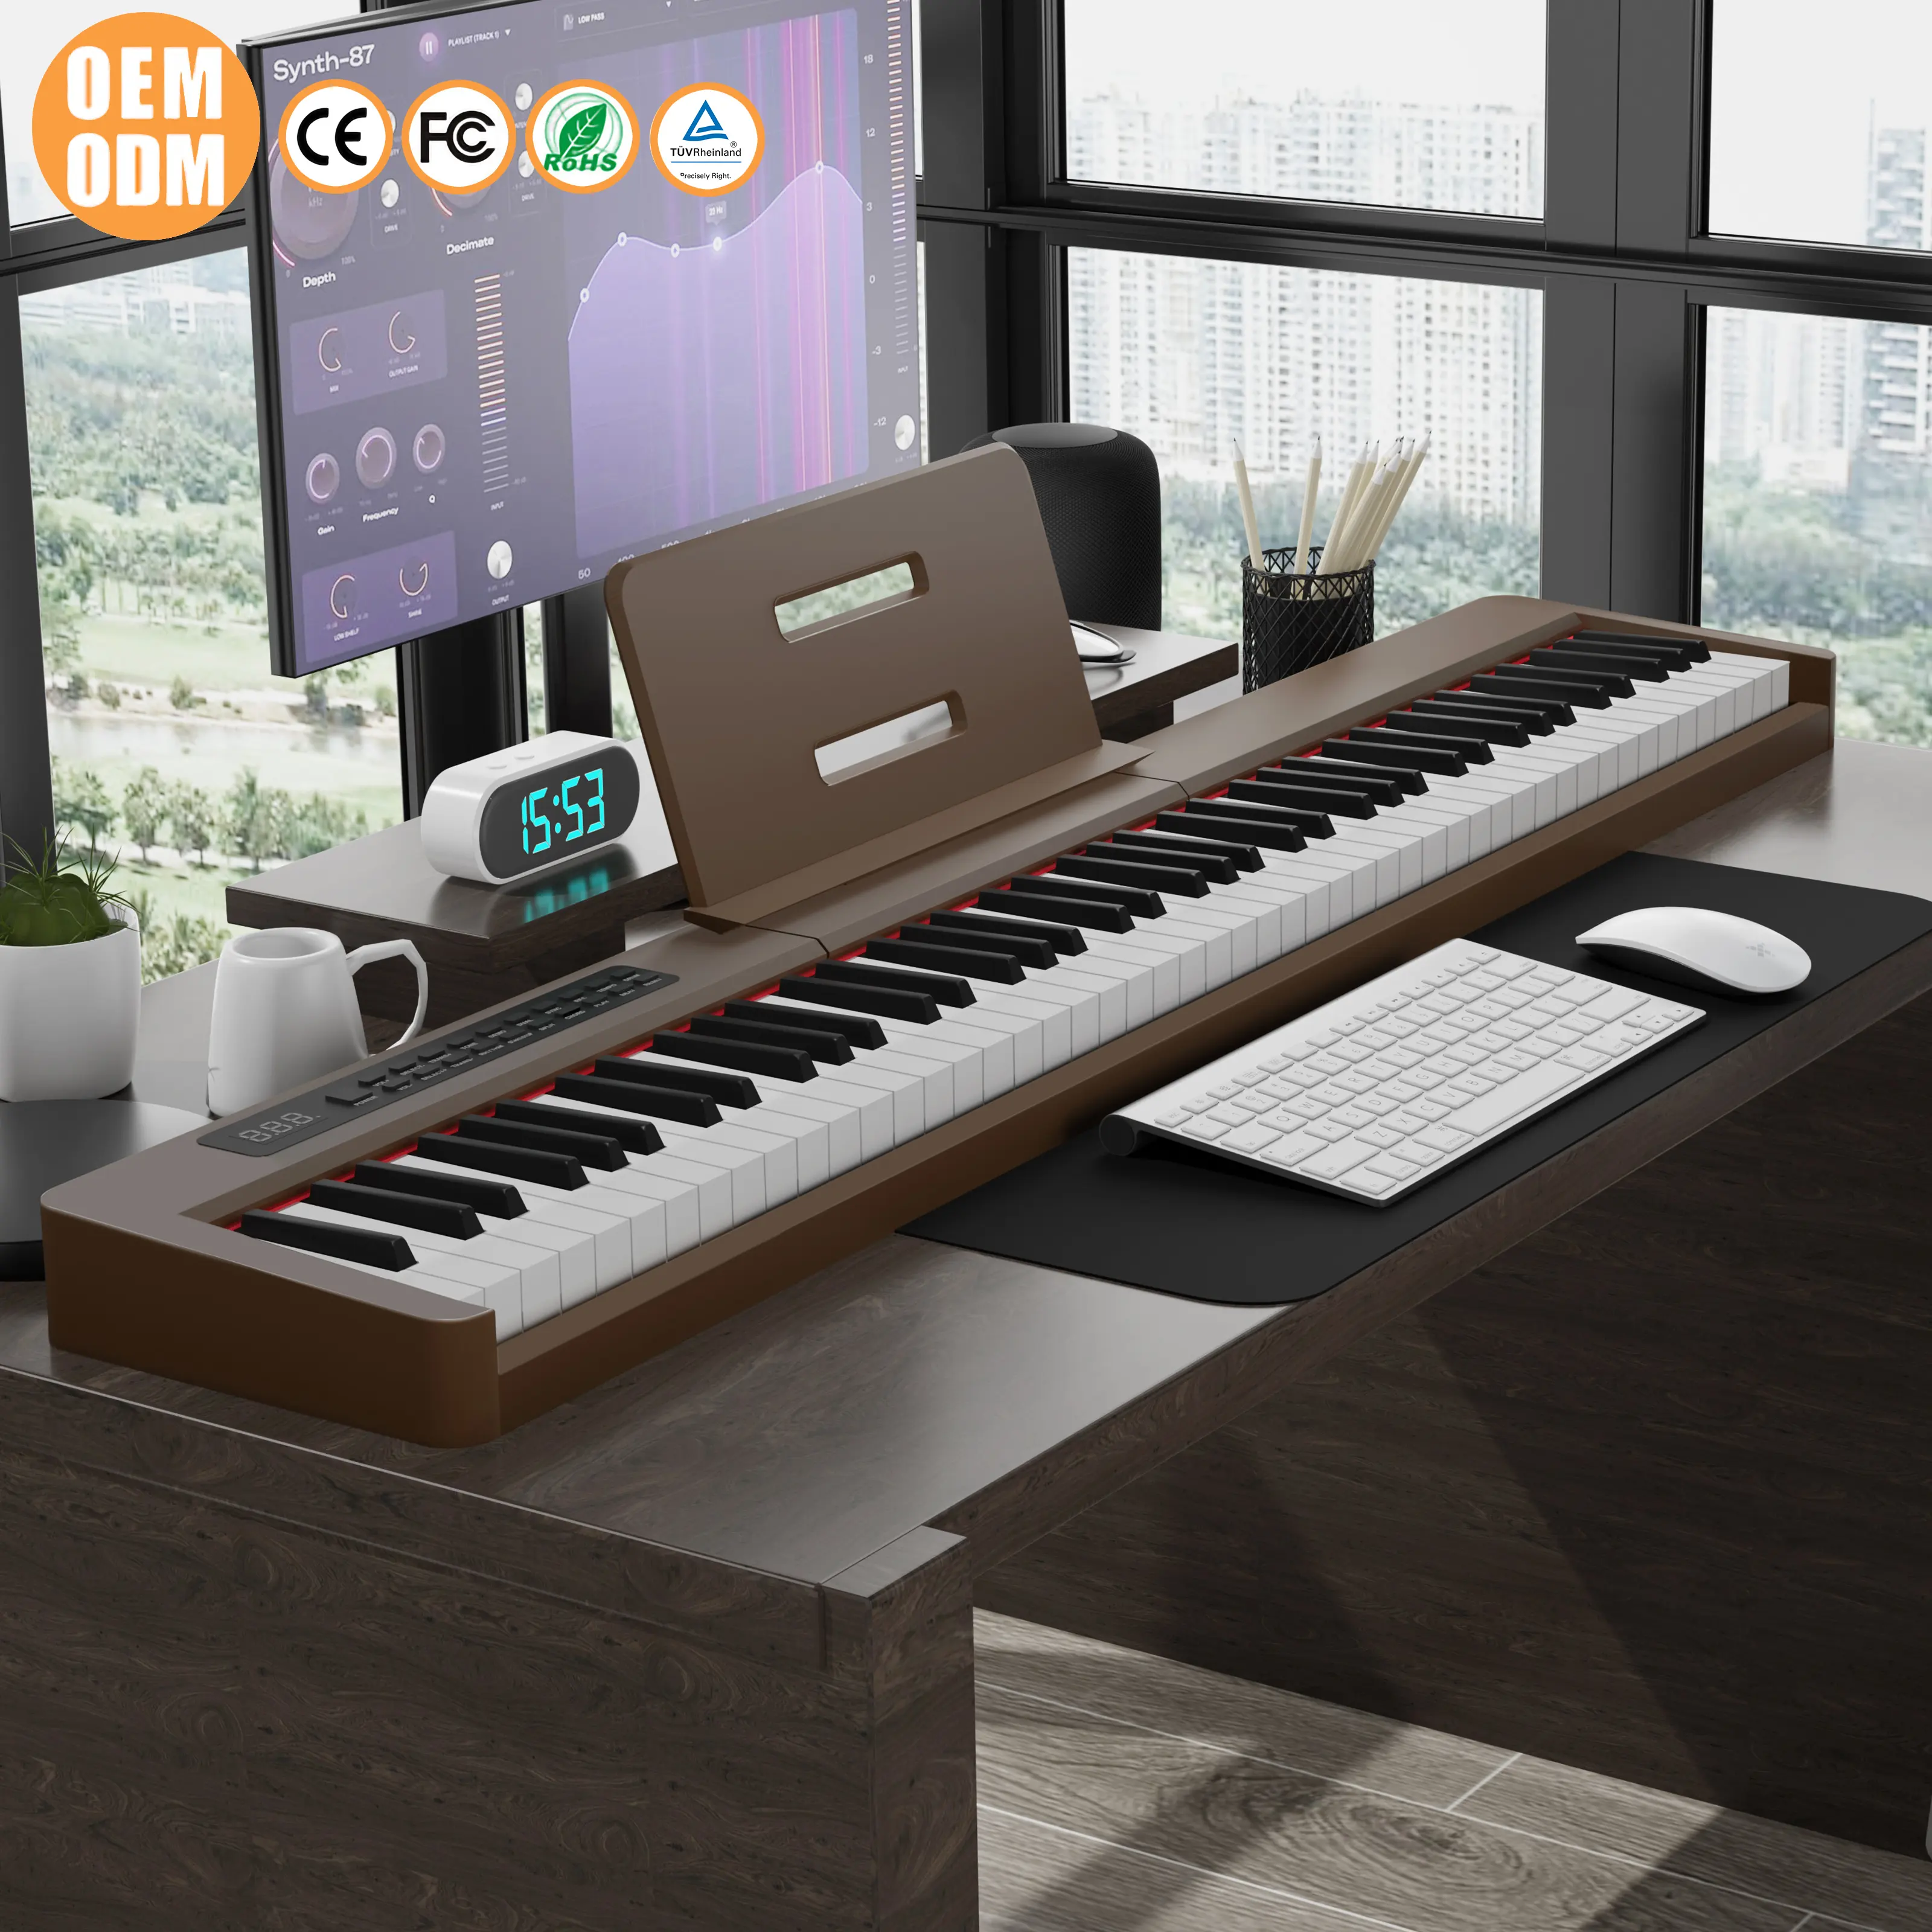 LeGemCharr 어쿠스틱 피아노 키보드 피아노 88 키 음악 키보드 88 키 전자 피아노 전기